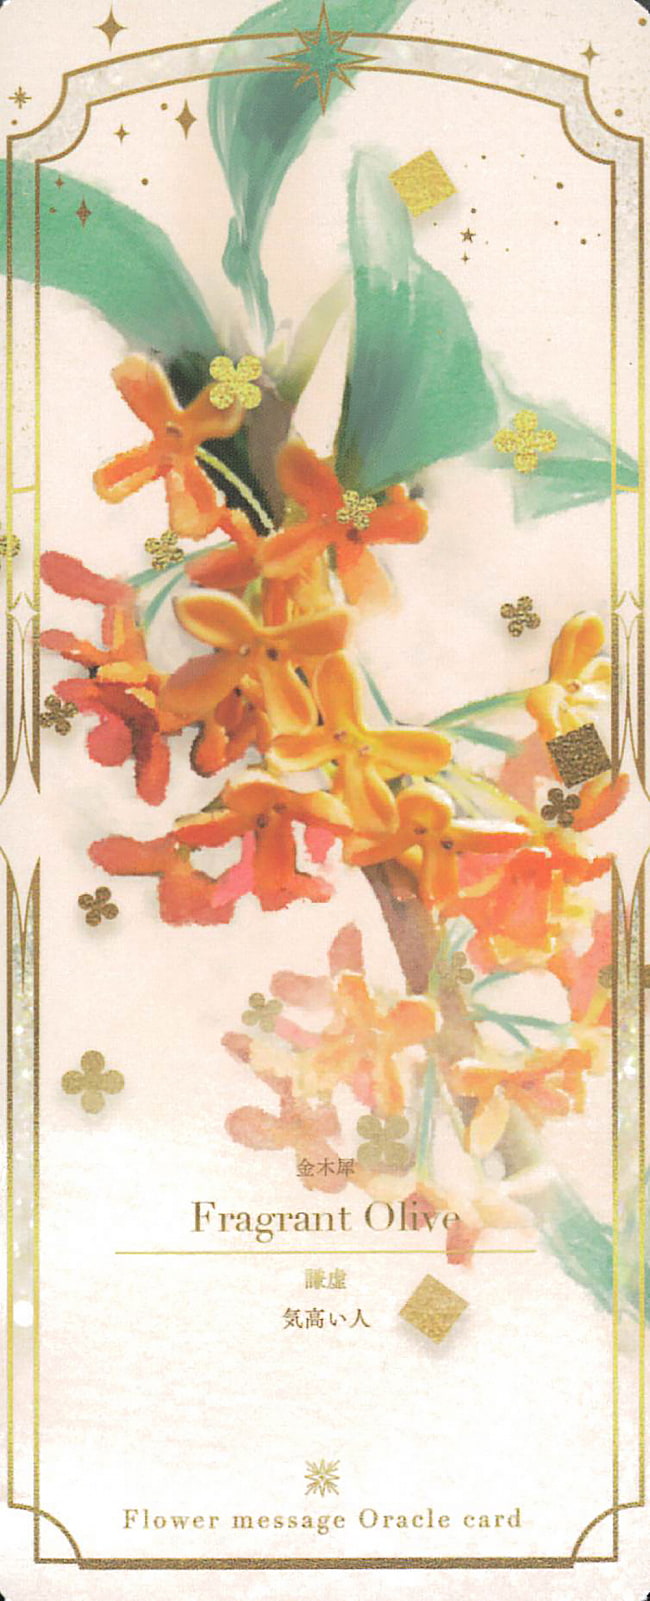 フラワーメッセージオラクルカード「4ヶ国語版」 - flower message oracle card「4 language version」 3 - 素敵なカードです